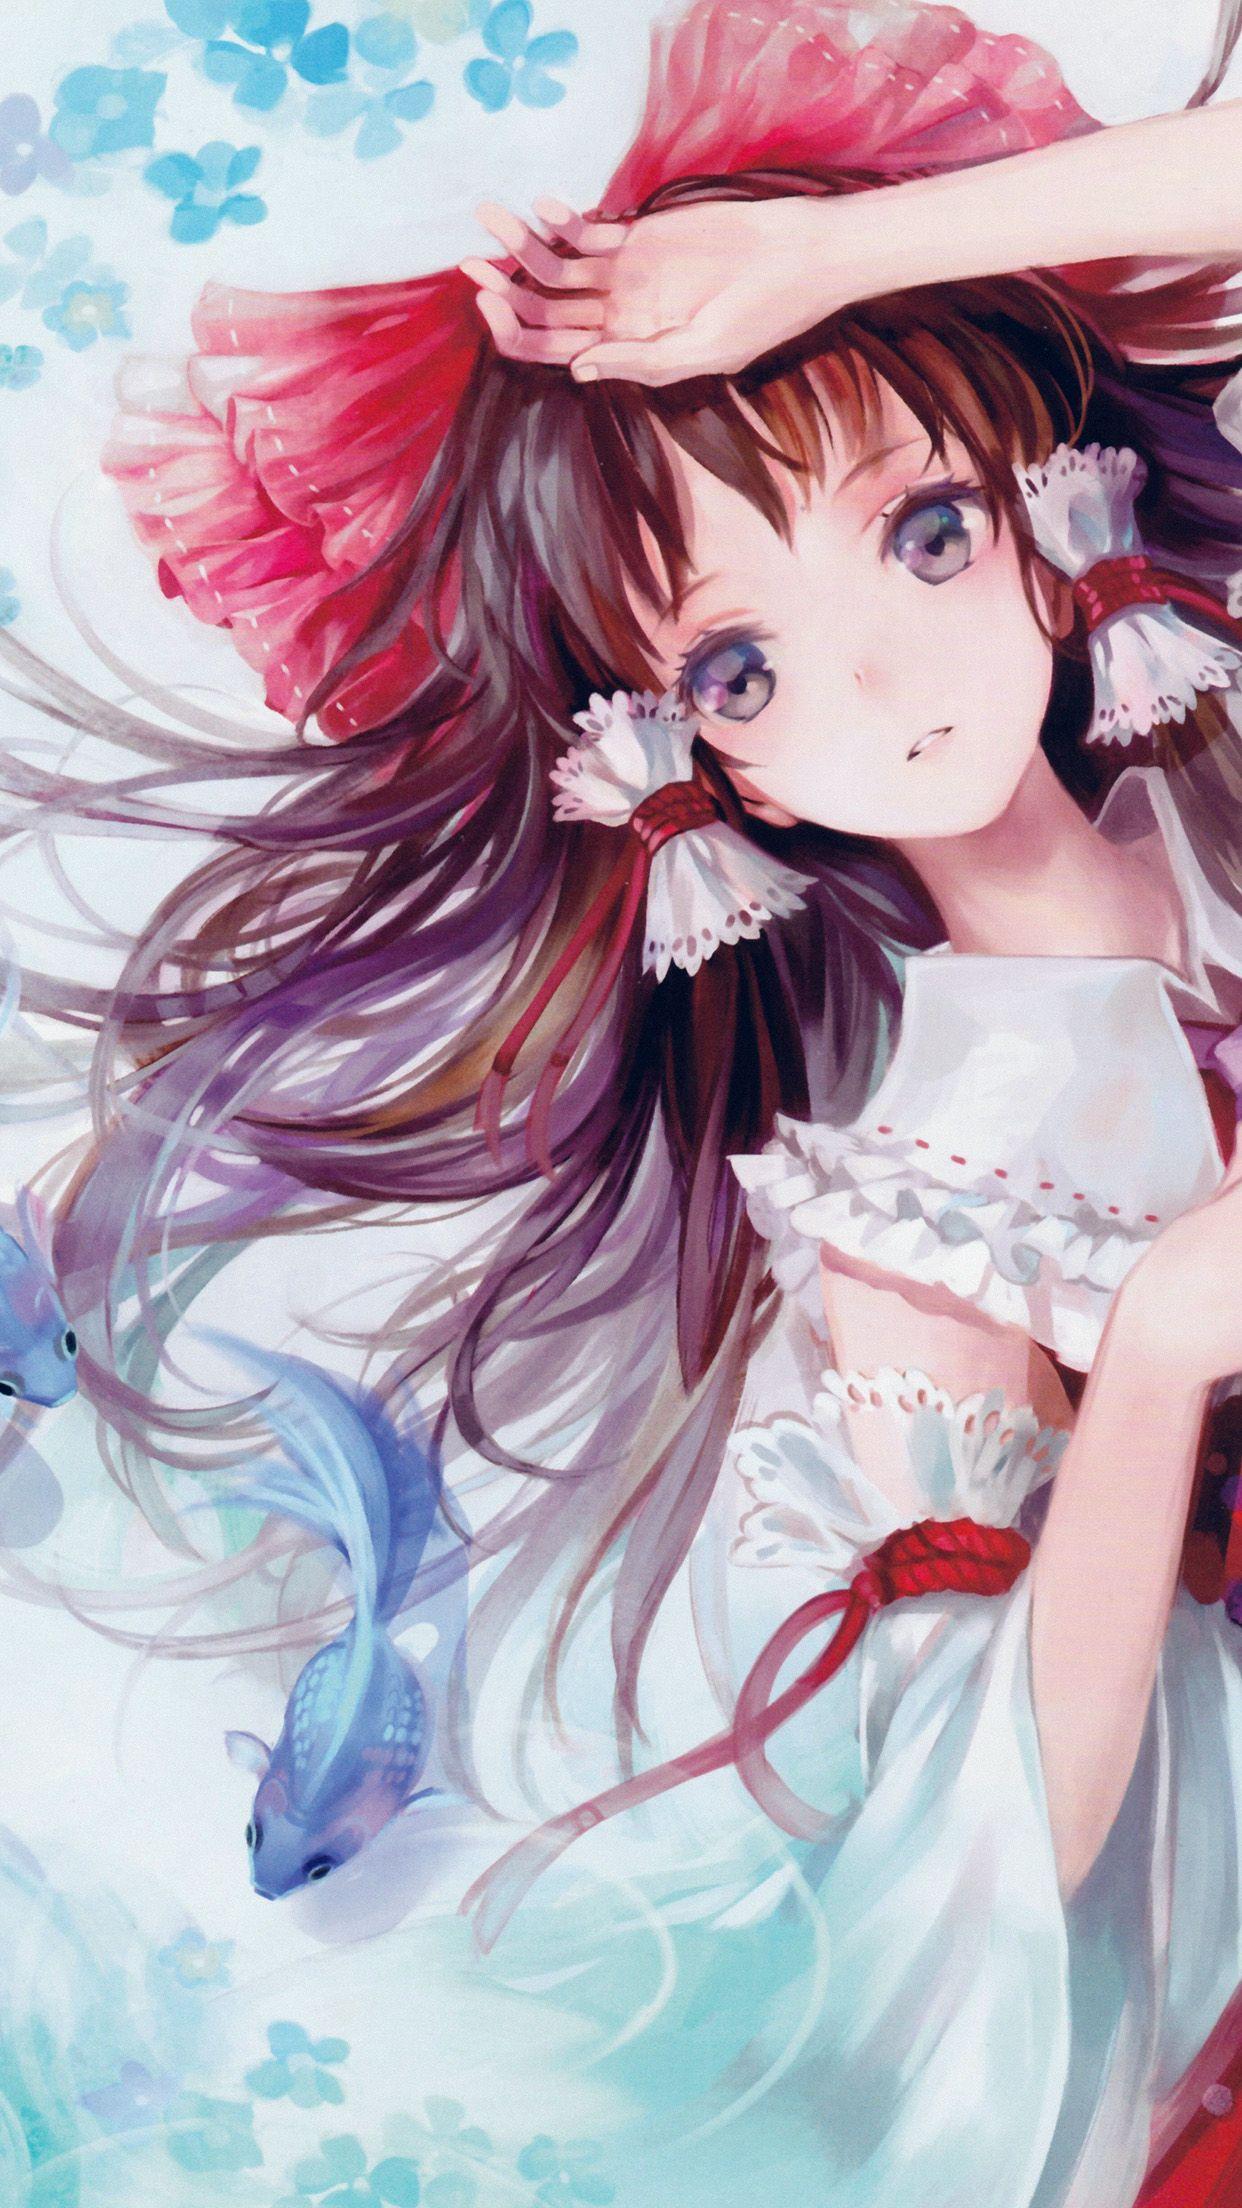 Beautiful Anime Girl iPhone Wallpaper Free Beautiful Anime